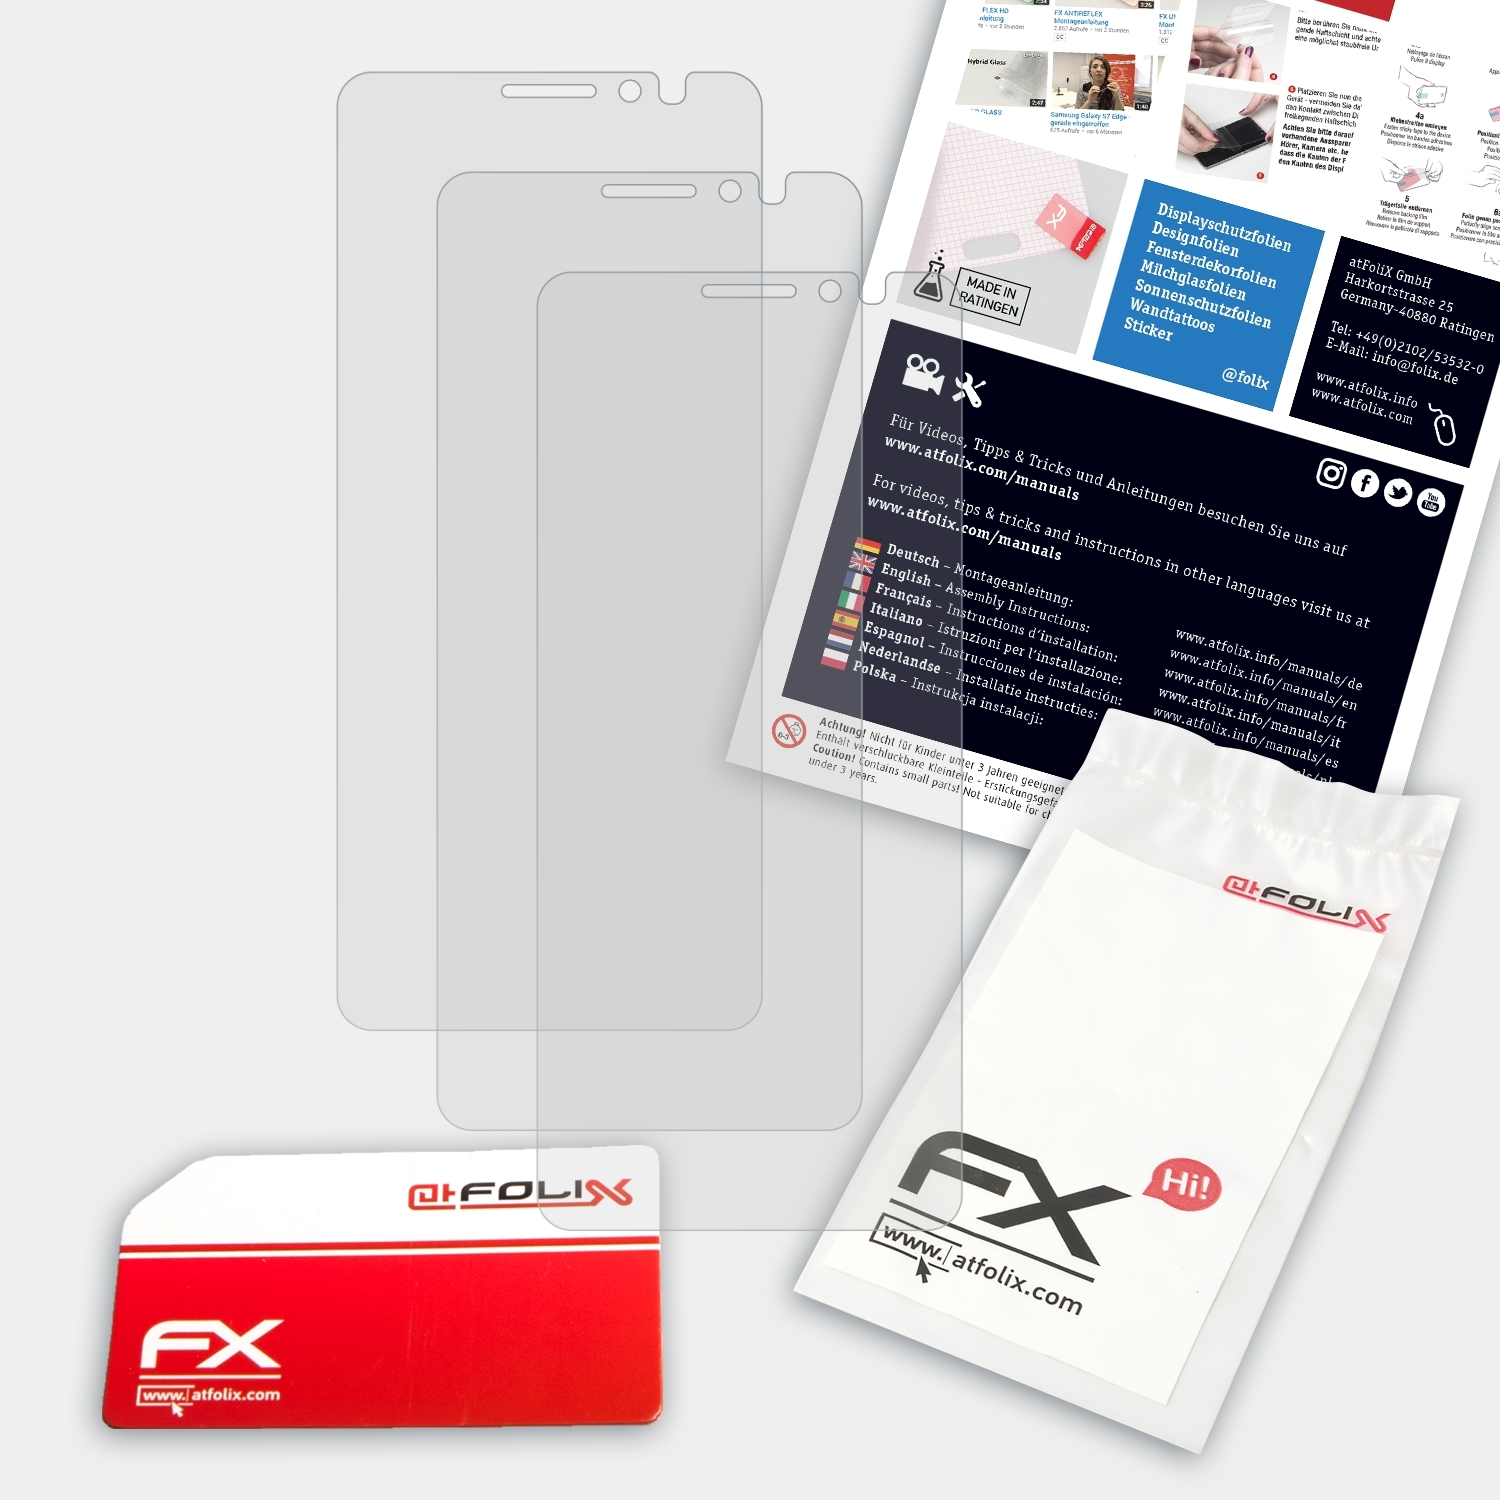 ATFOLIX 3x FX-Antireflex Displayschutz(für Pro) A1 UMiDigi